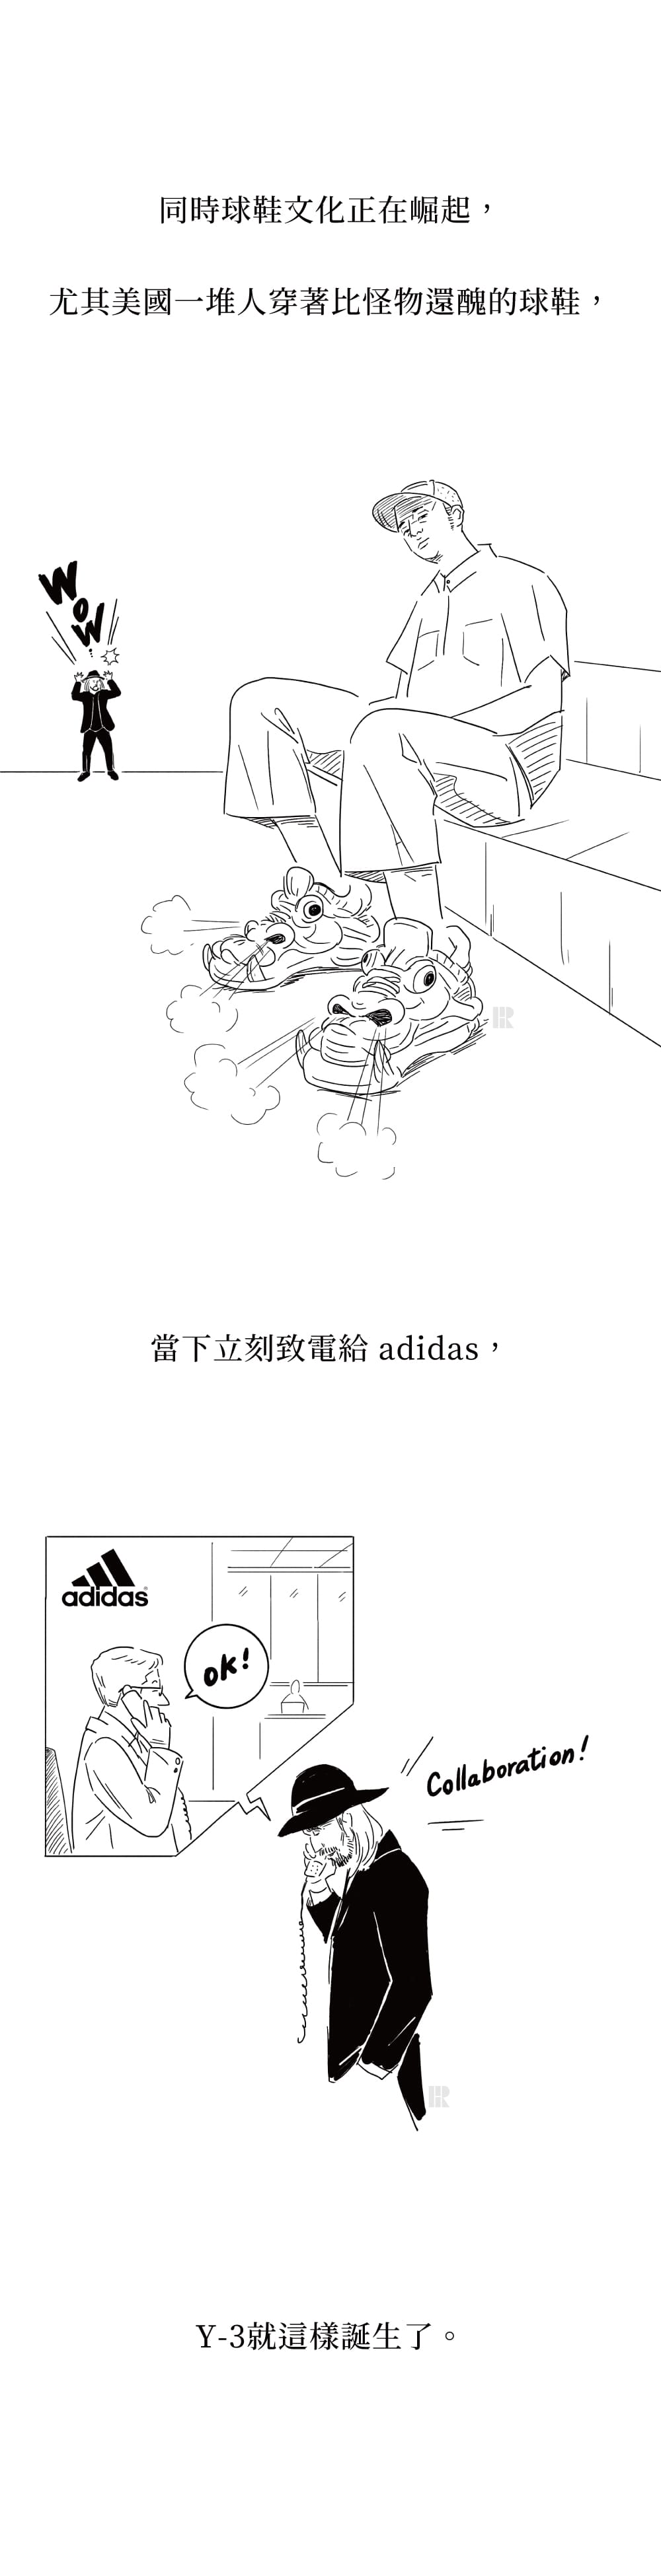 因球鞋文化正崛起，山本耀司嗅到商機，便打電話給adidas尋求合作